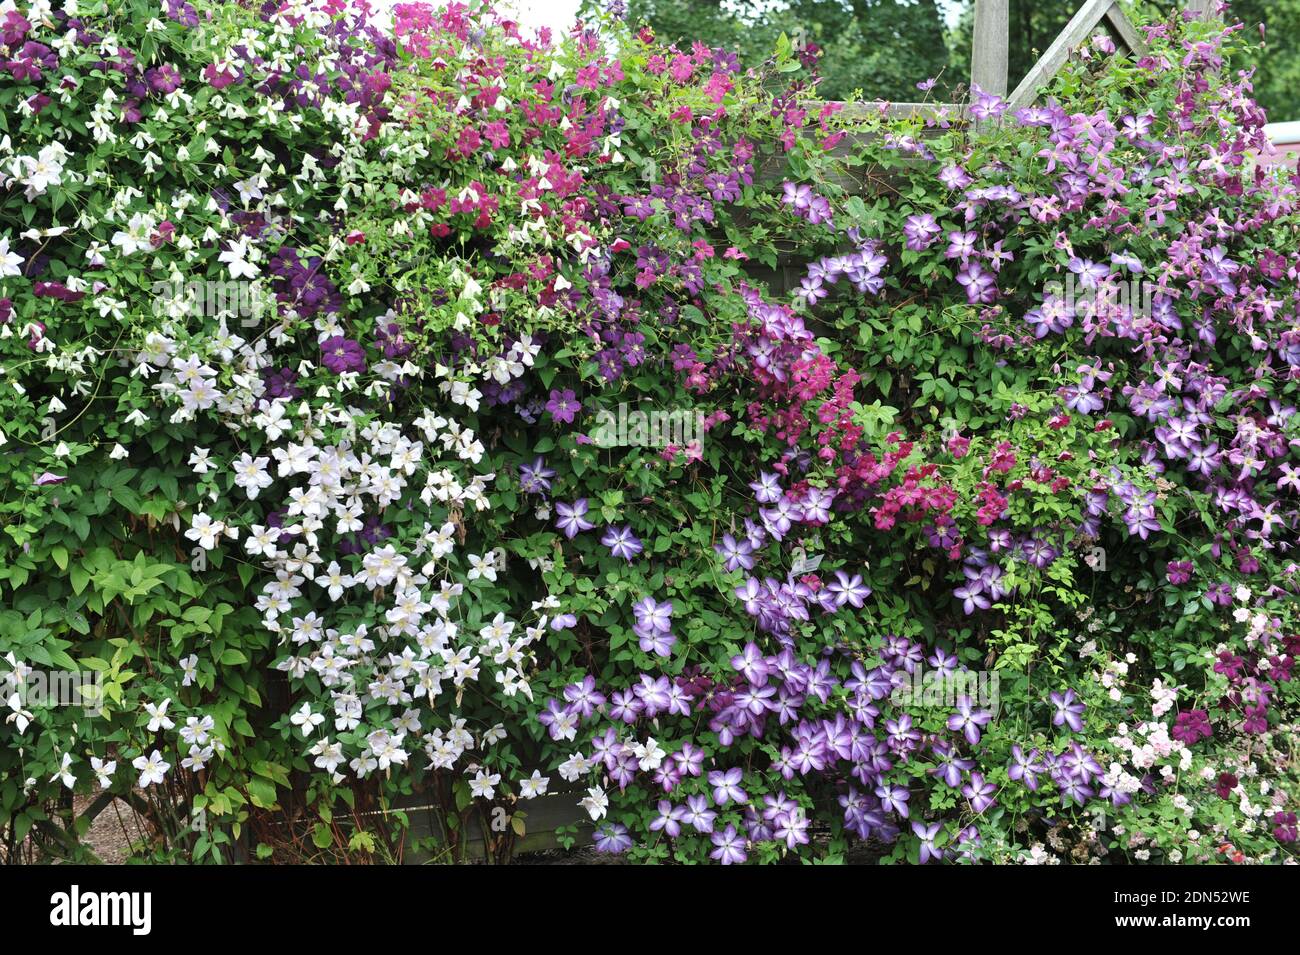 Eine Wand, geschmückt mit kleinen blühenden Sorten von Clematis viticella Romantik, Venosa violacea, Fülle, Royal Velours in einem Garten im Juli Stockfoto